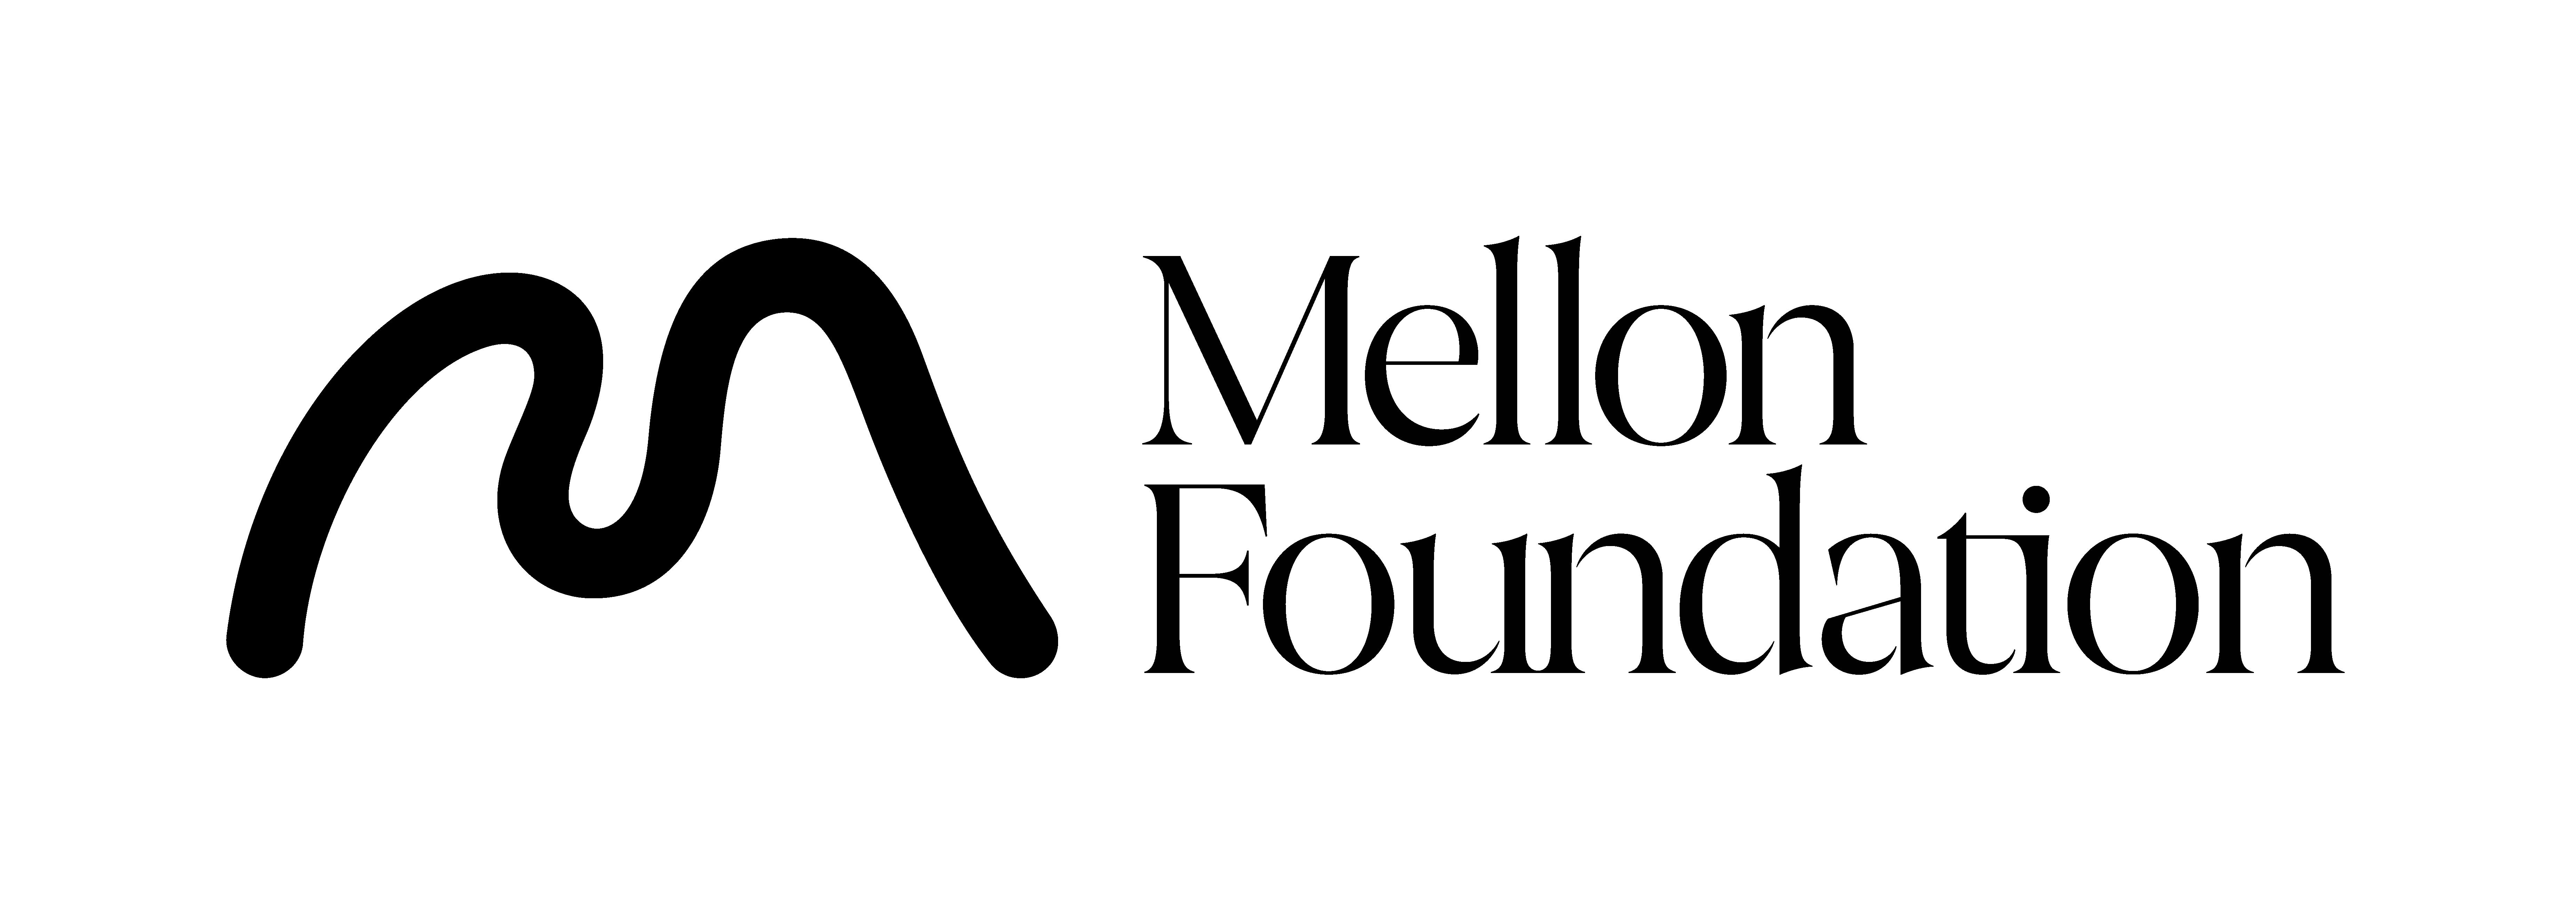 the Mellon Foundation